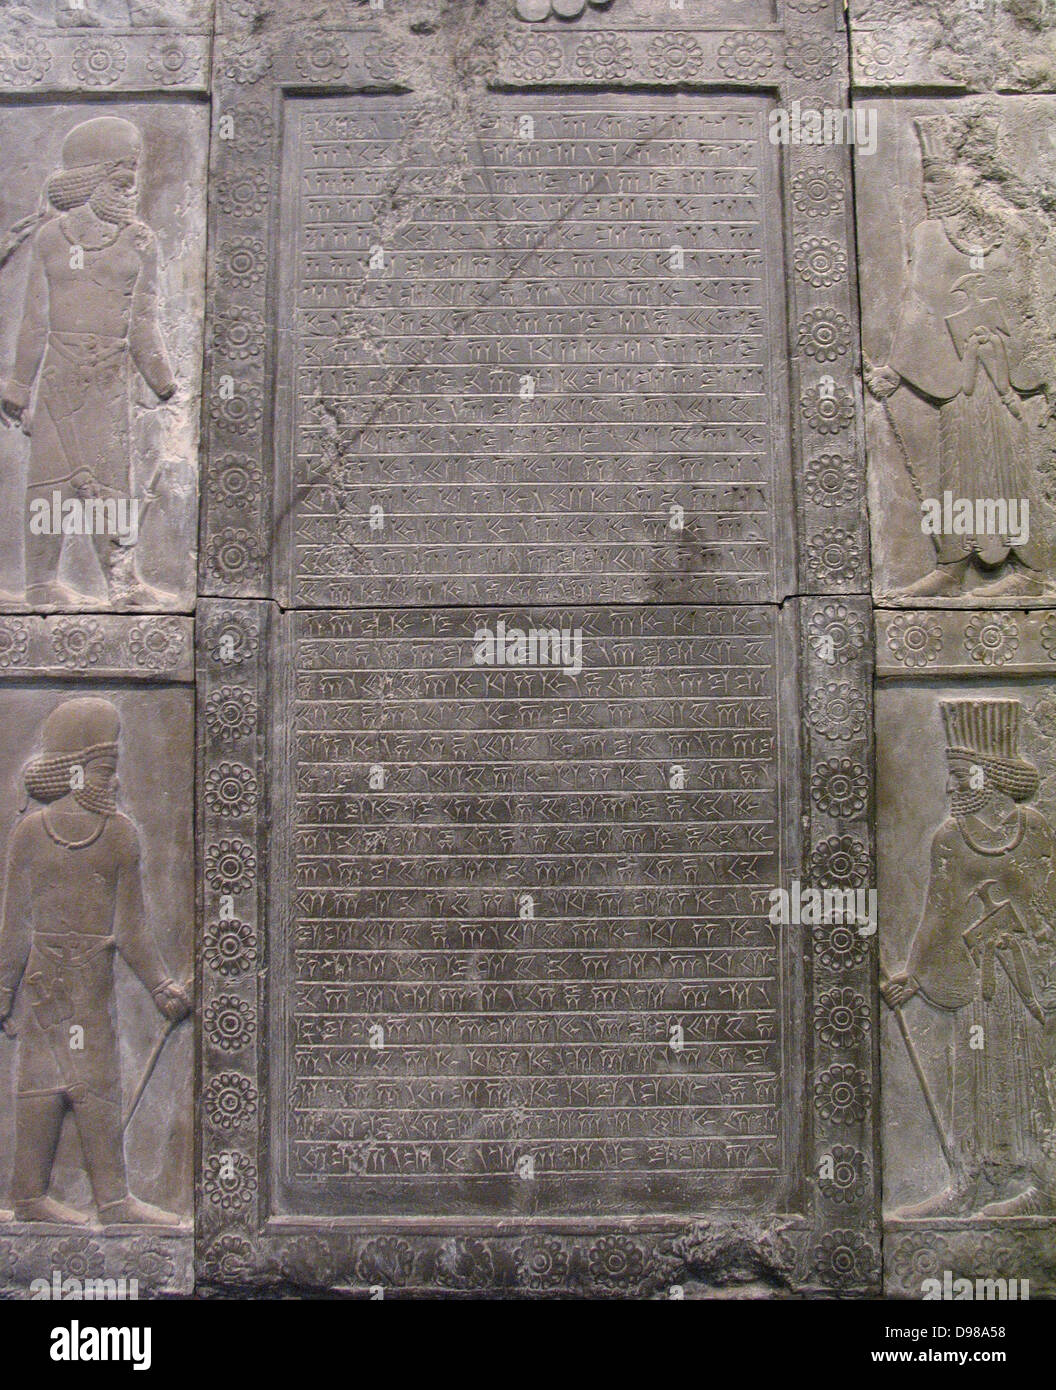 Diese Inschrift befindet sich in einem alten Skript namens Keilschrift geschrieben. Es erfasst, da der König Arthahsastha regierte III (359-338 v. Chr.) die Treppe, auf der diese Inschrift gemeißelt wurde wieder aufgebaut. Die Treppe war eine Änderung in den Palast des Königs Darius. Stockfoto